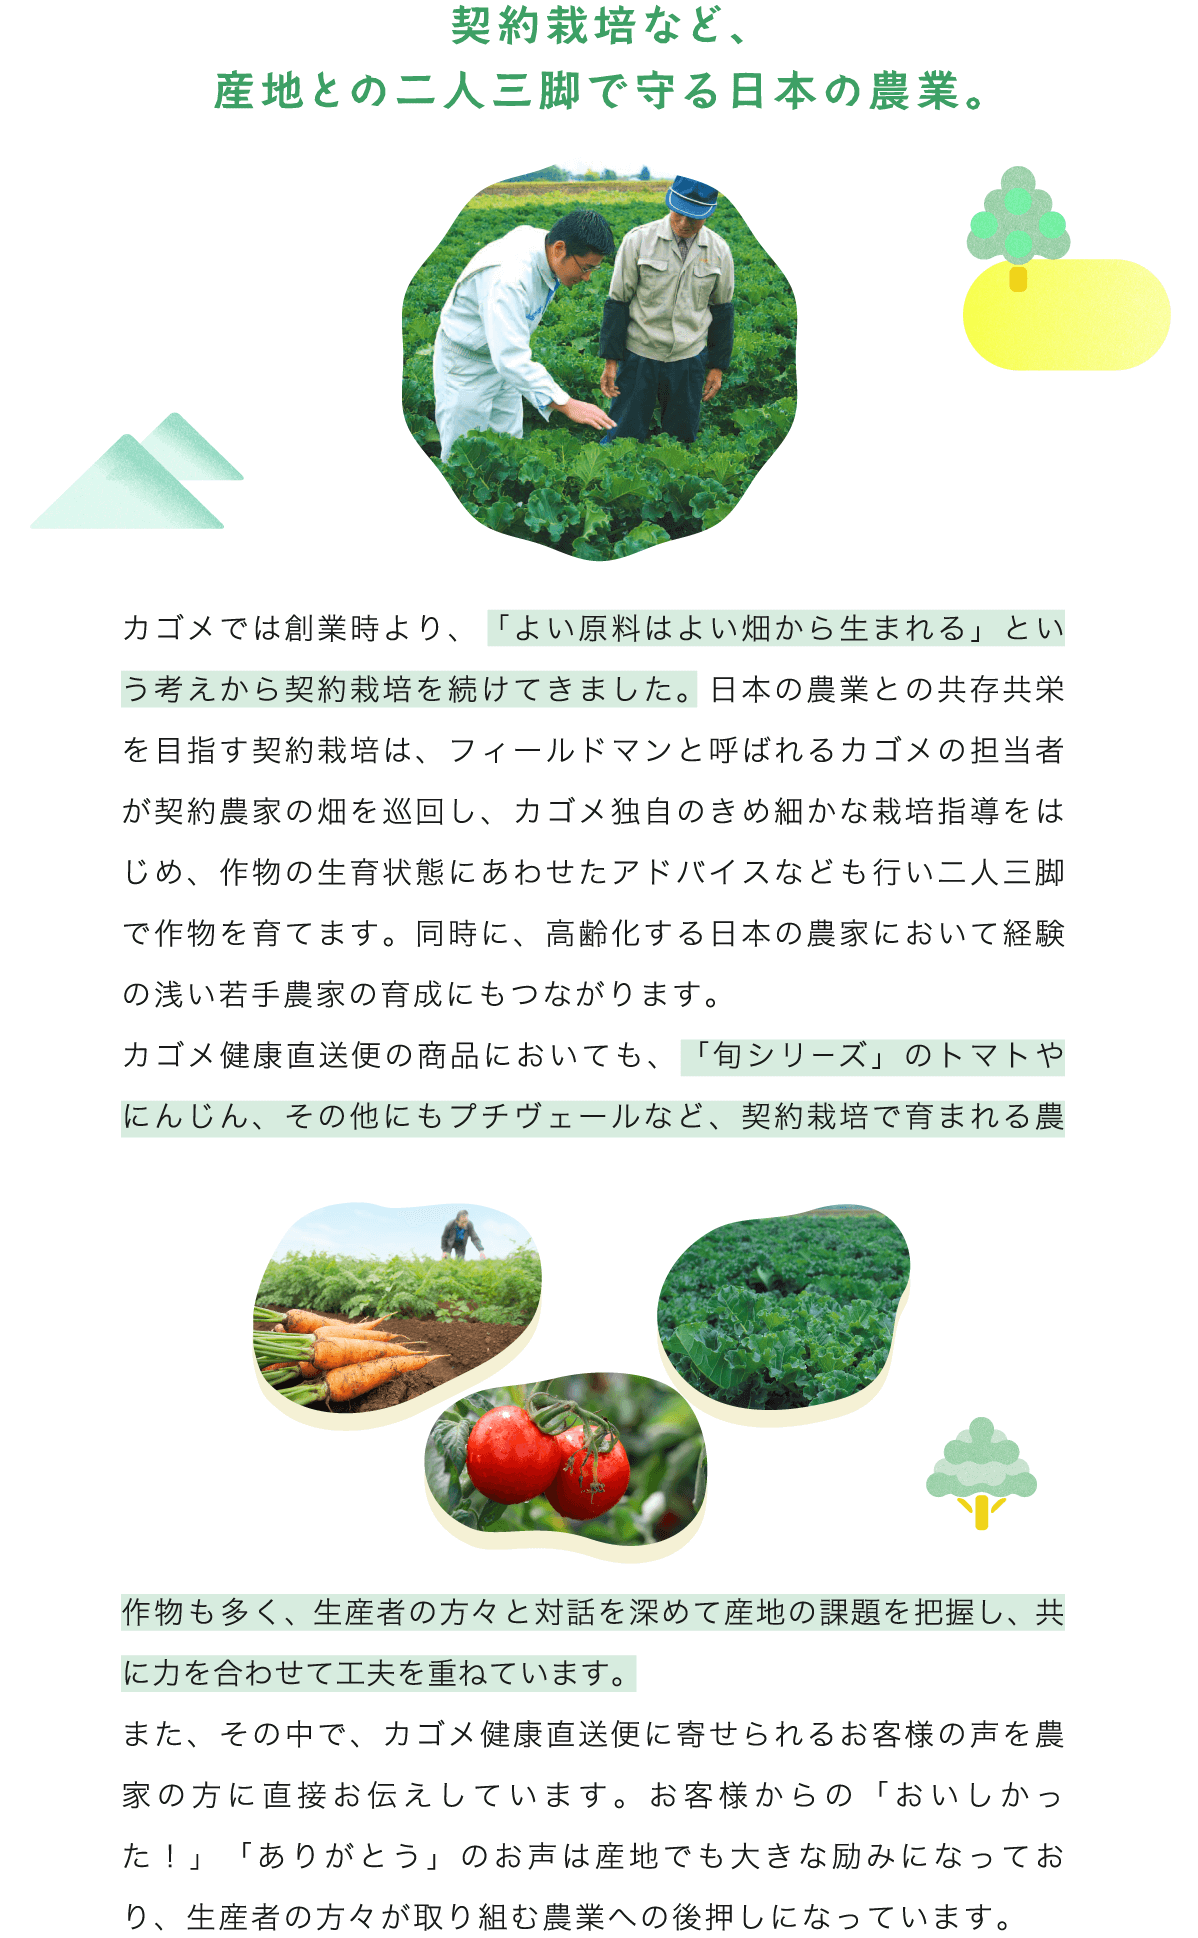 契約栽培など、産地との二人三脚で守る日本の農業。